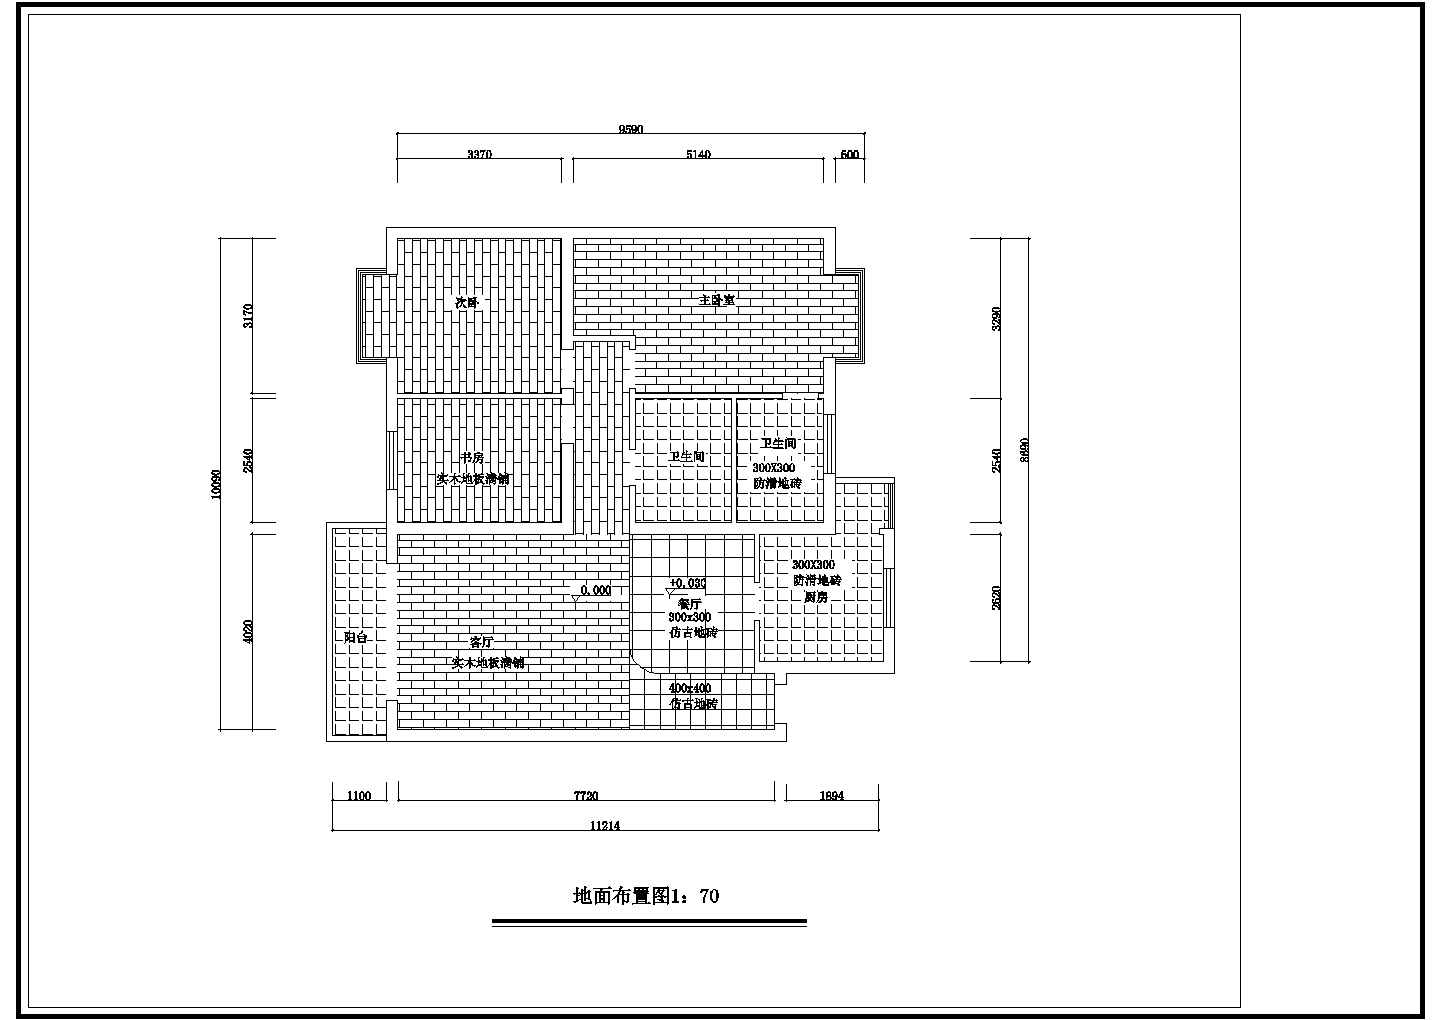 苏州碧桂园样板房全套室内装修设计方案图纸(含电路配置图)